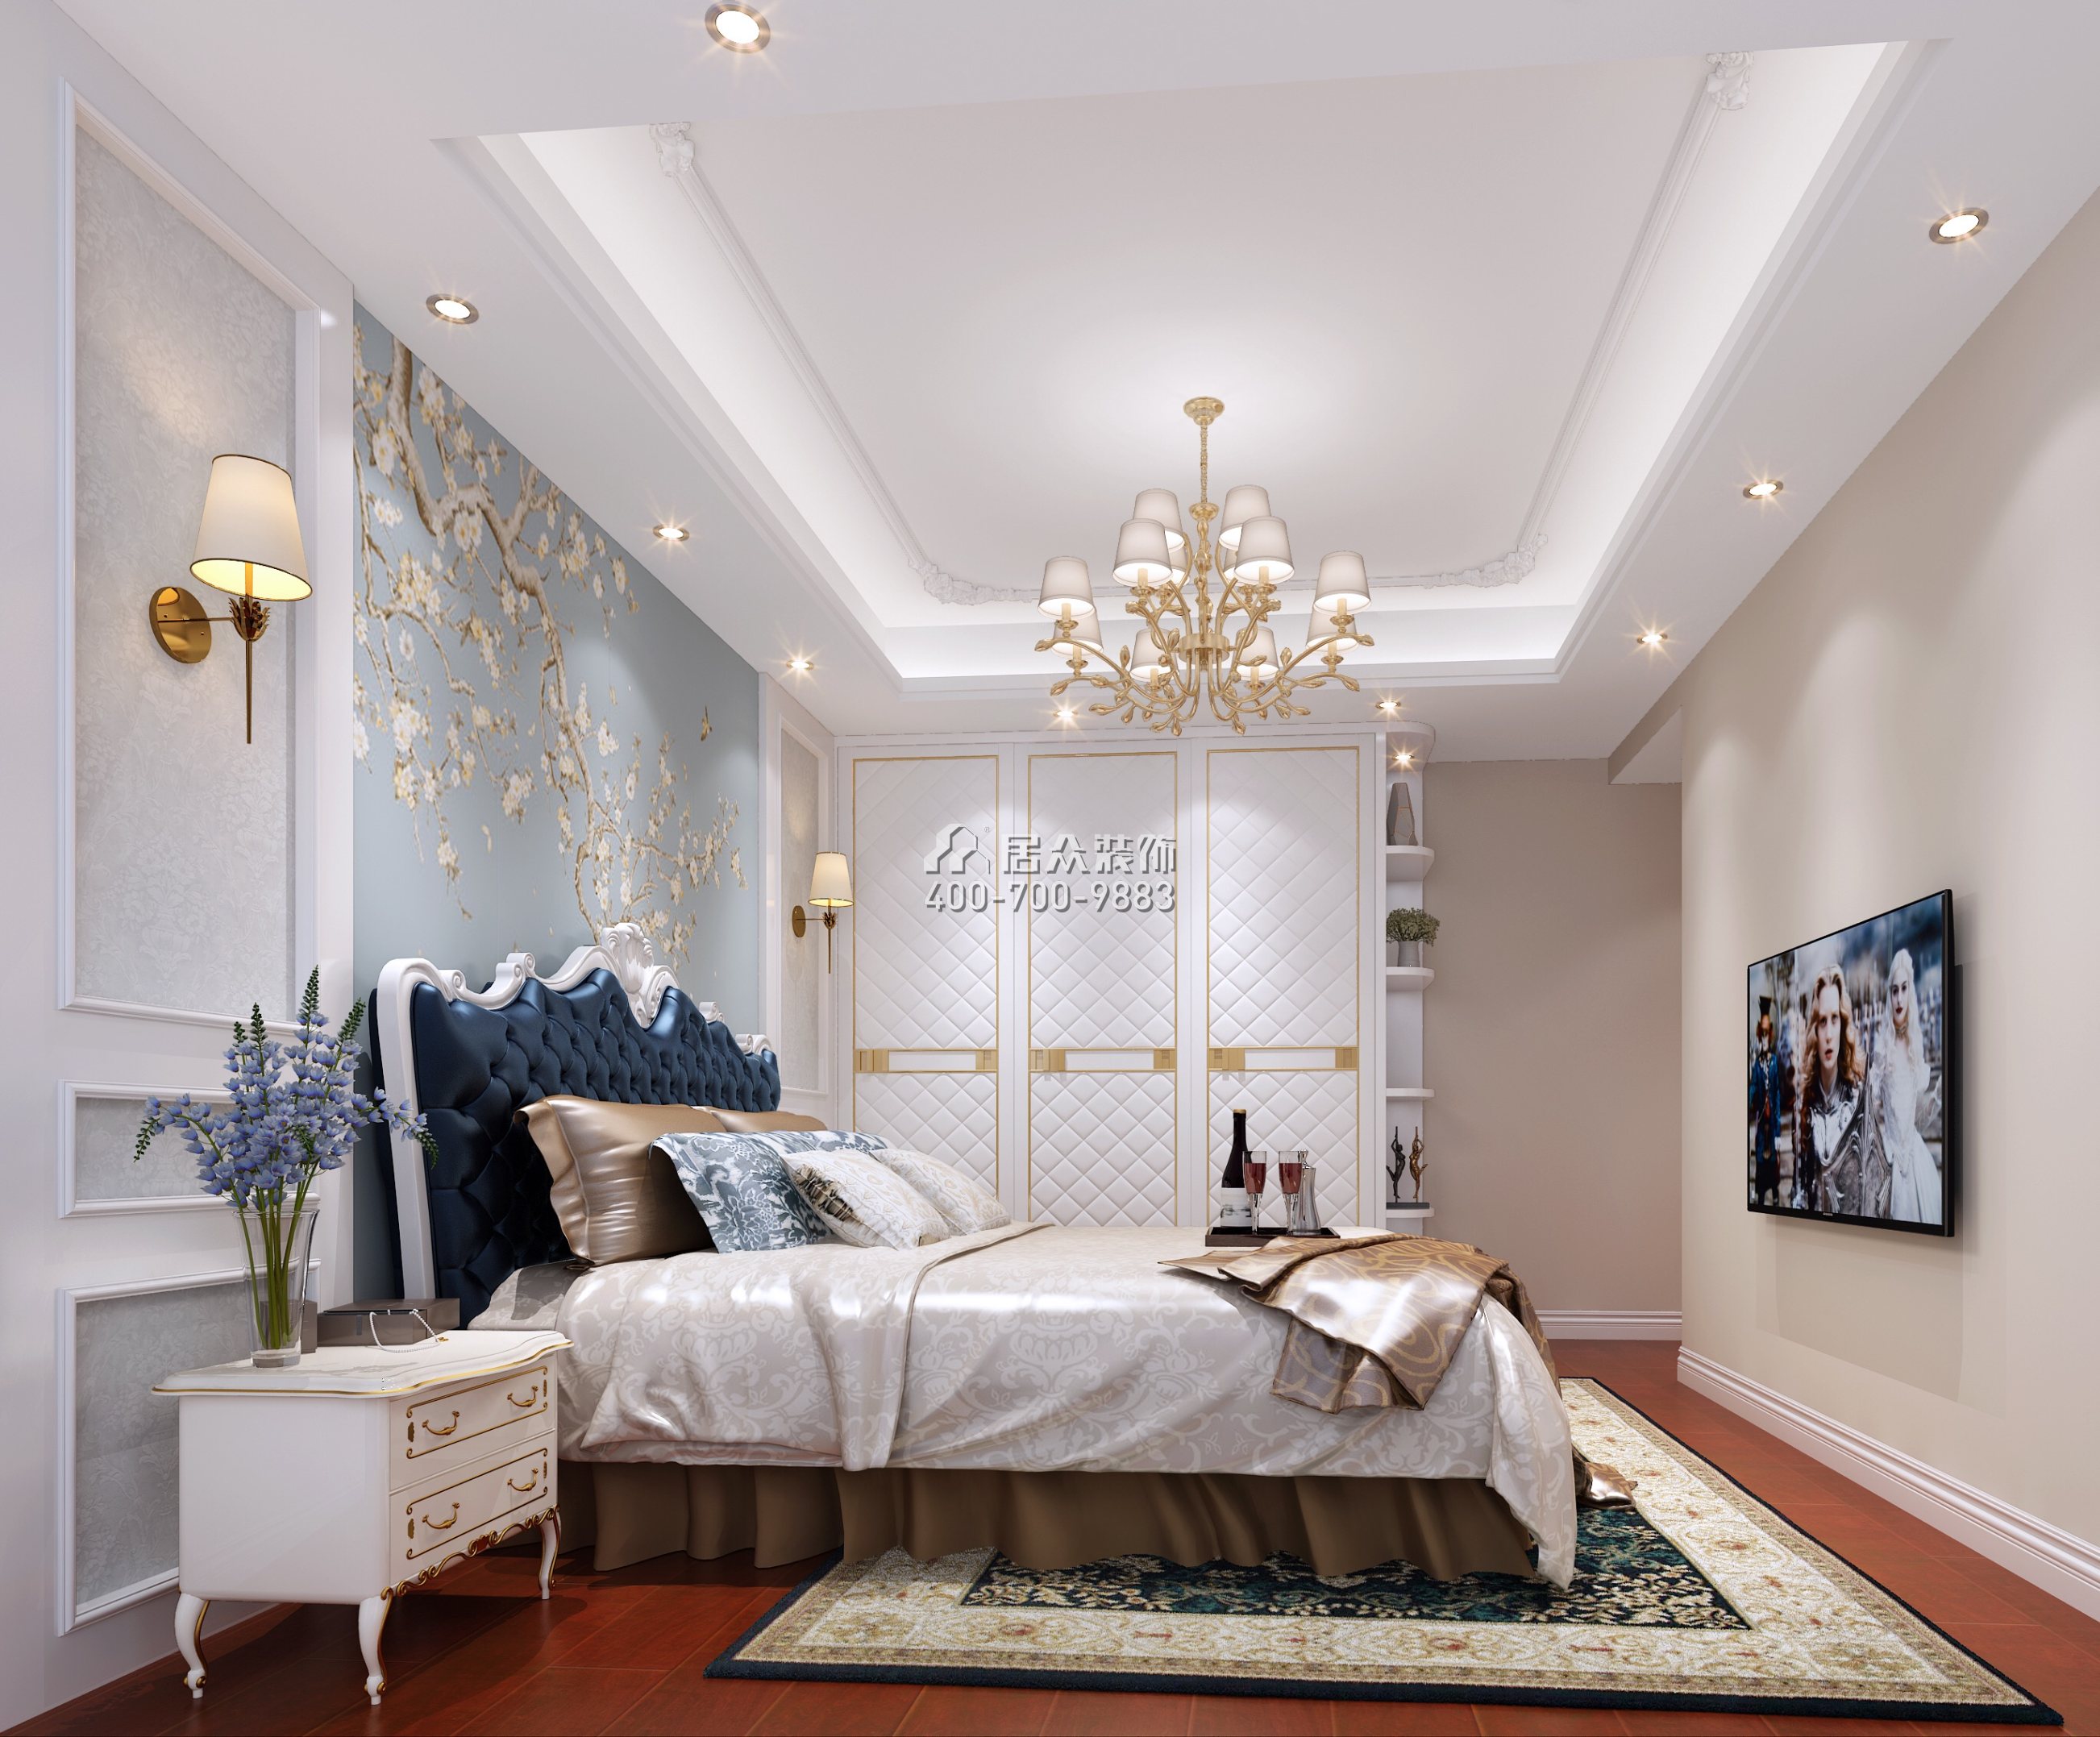 远洋新干线150平方米欧式风格平层户型卧室装修效果图